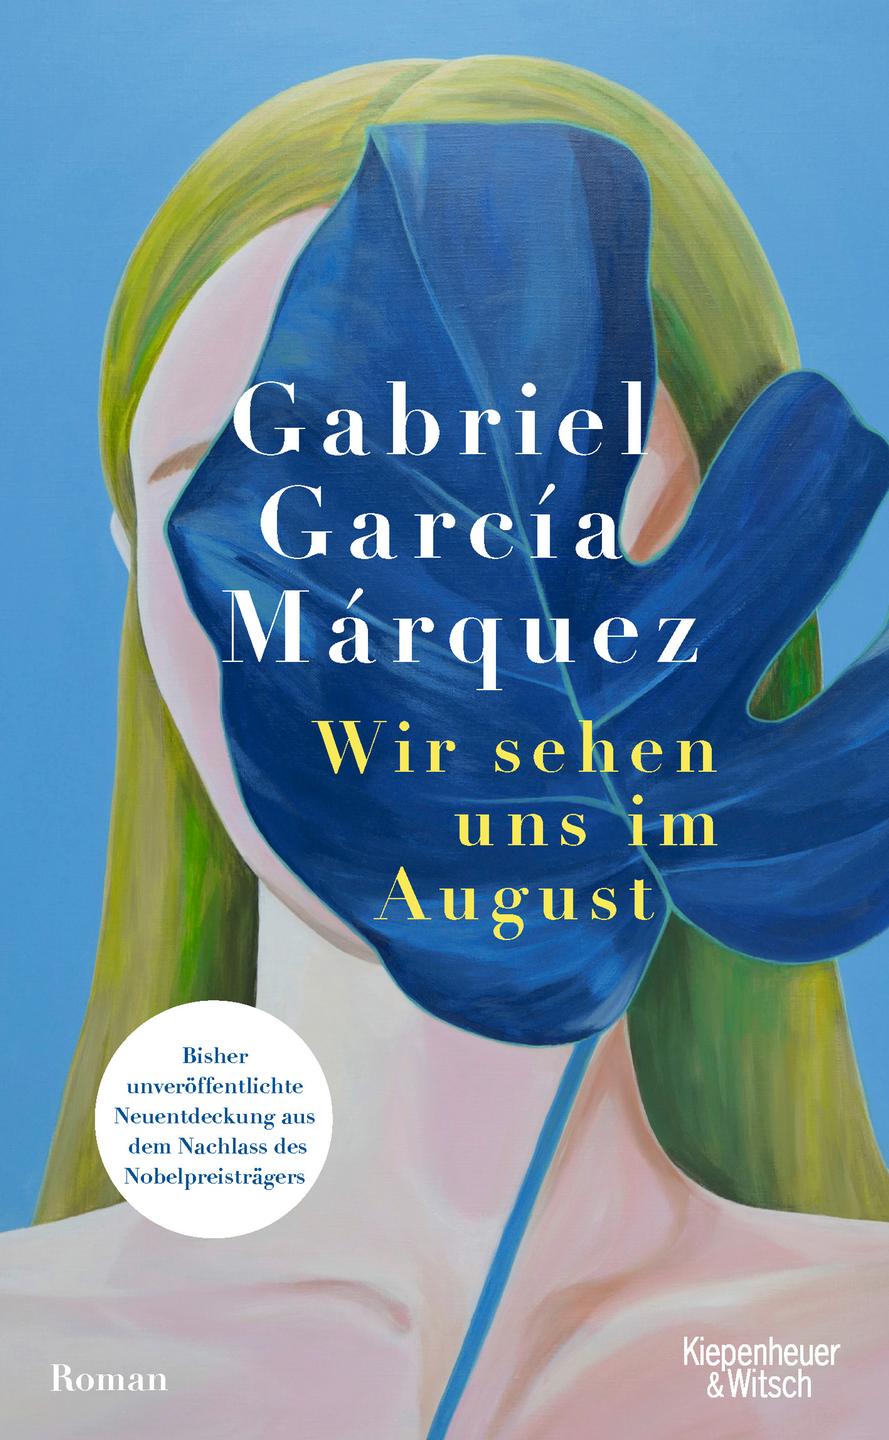 Auf dem Cover des Buchs "Wir sehen uns im August" ist eine Illustration einer Frau zu sehen, deren Gesicht von einem blauen Blatt verdeckt wird.